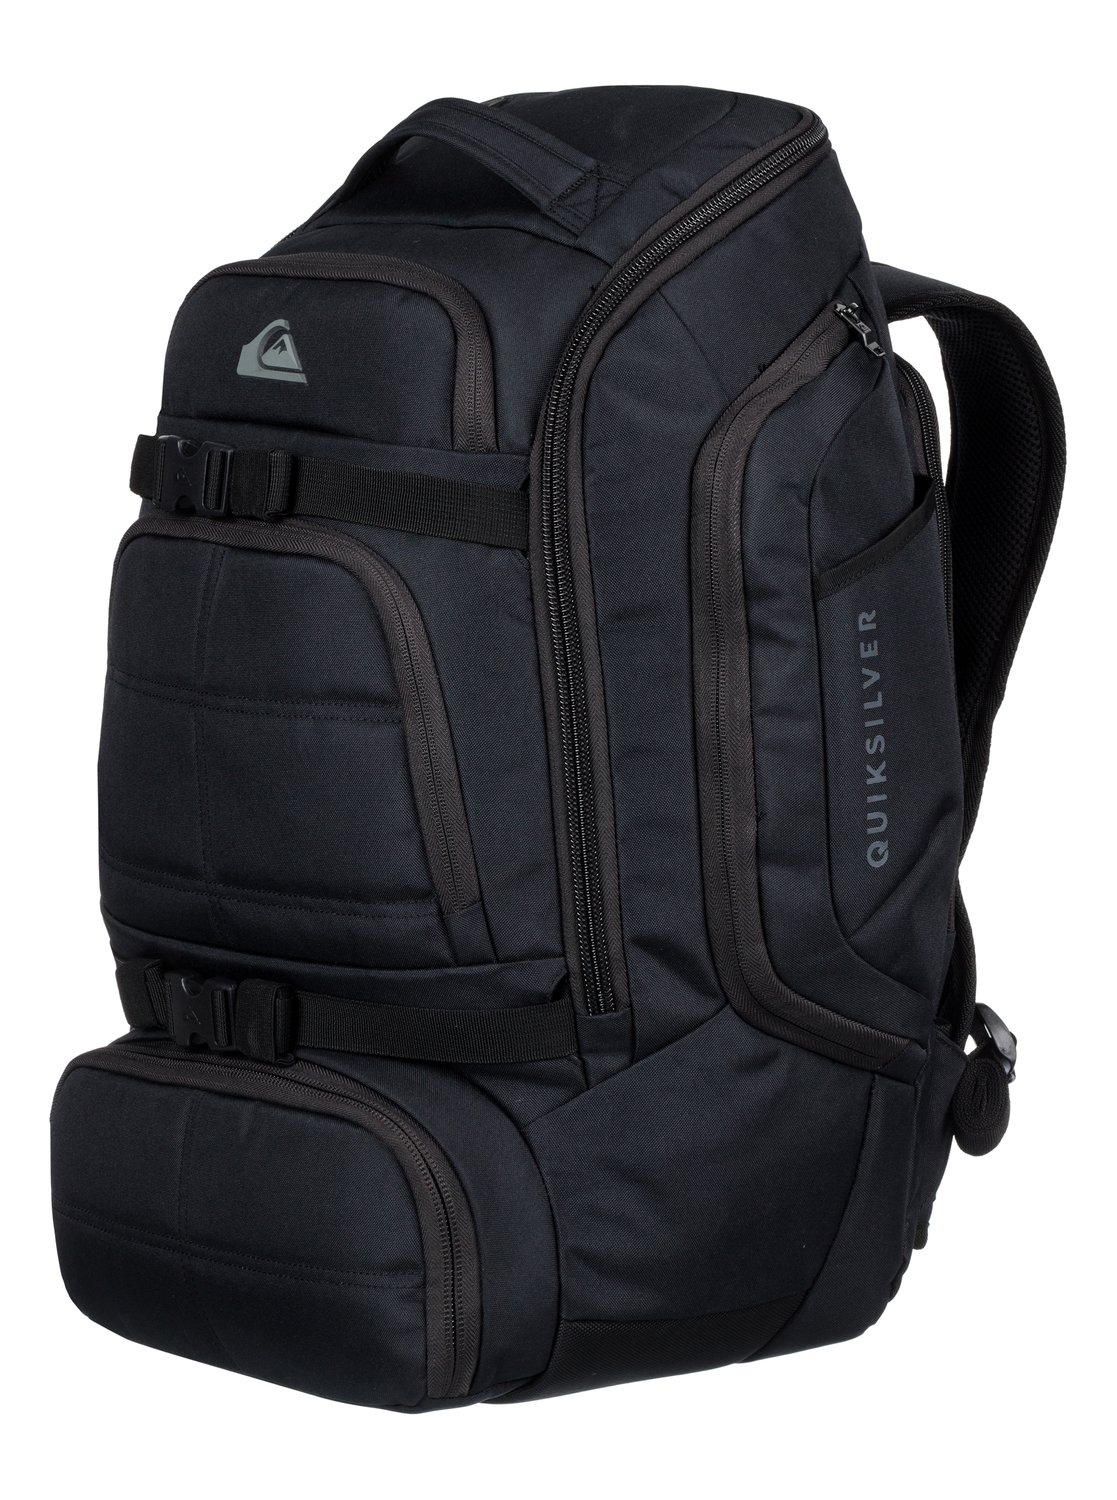 Quiksilver™ Fetch 45L - Multi-Function Surf Backpack 45L - Men